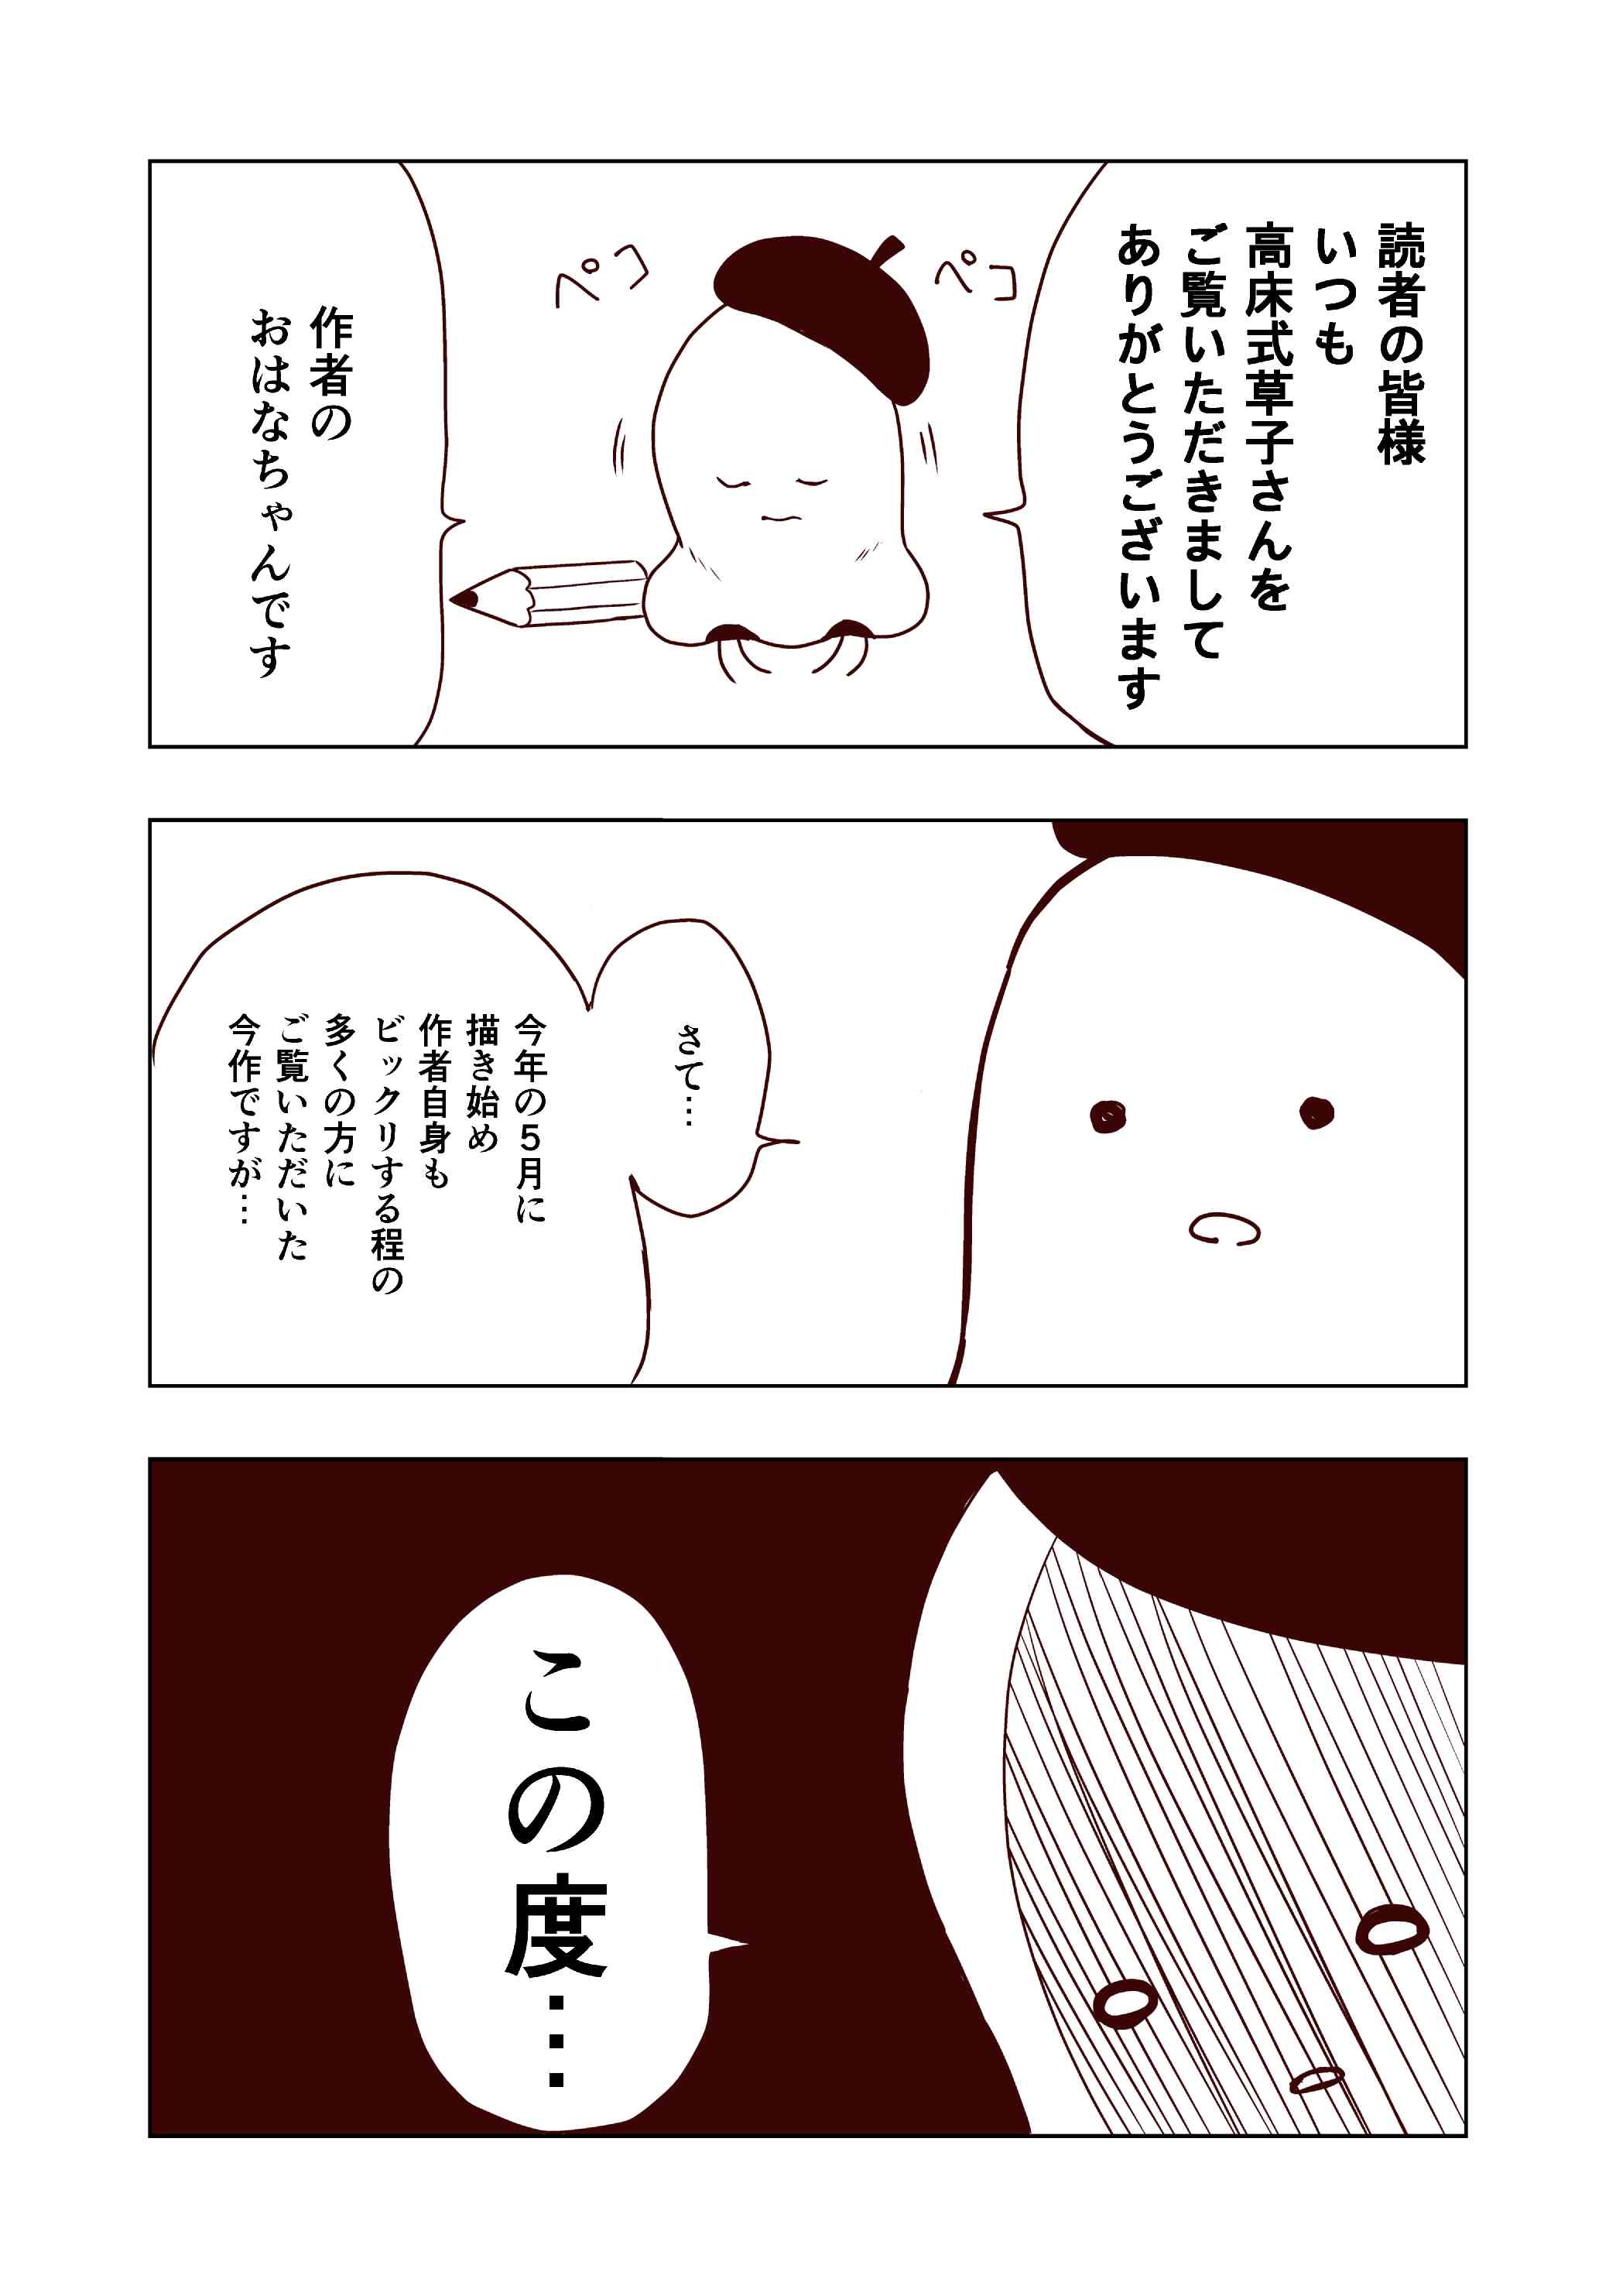 おはなちゃん(漫画家)サブ垢 (@ohana_manga) / Twitter